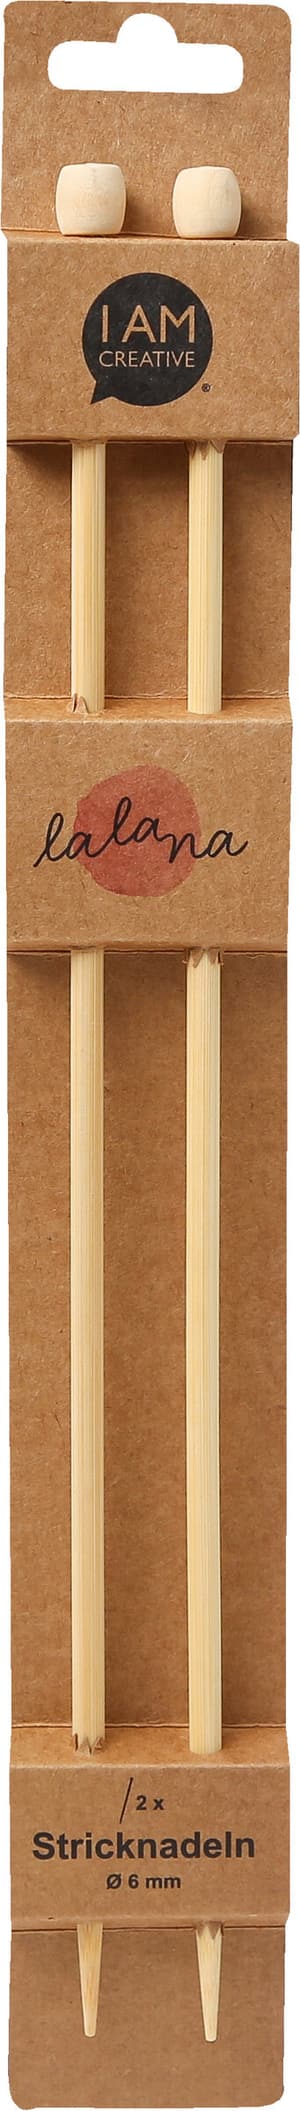 Stricknadeln, Bambus-Stricknadeln für Anfänger und Experten, Natur, ø 6 x 350 mm, 2 Stk.